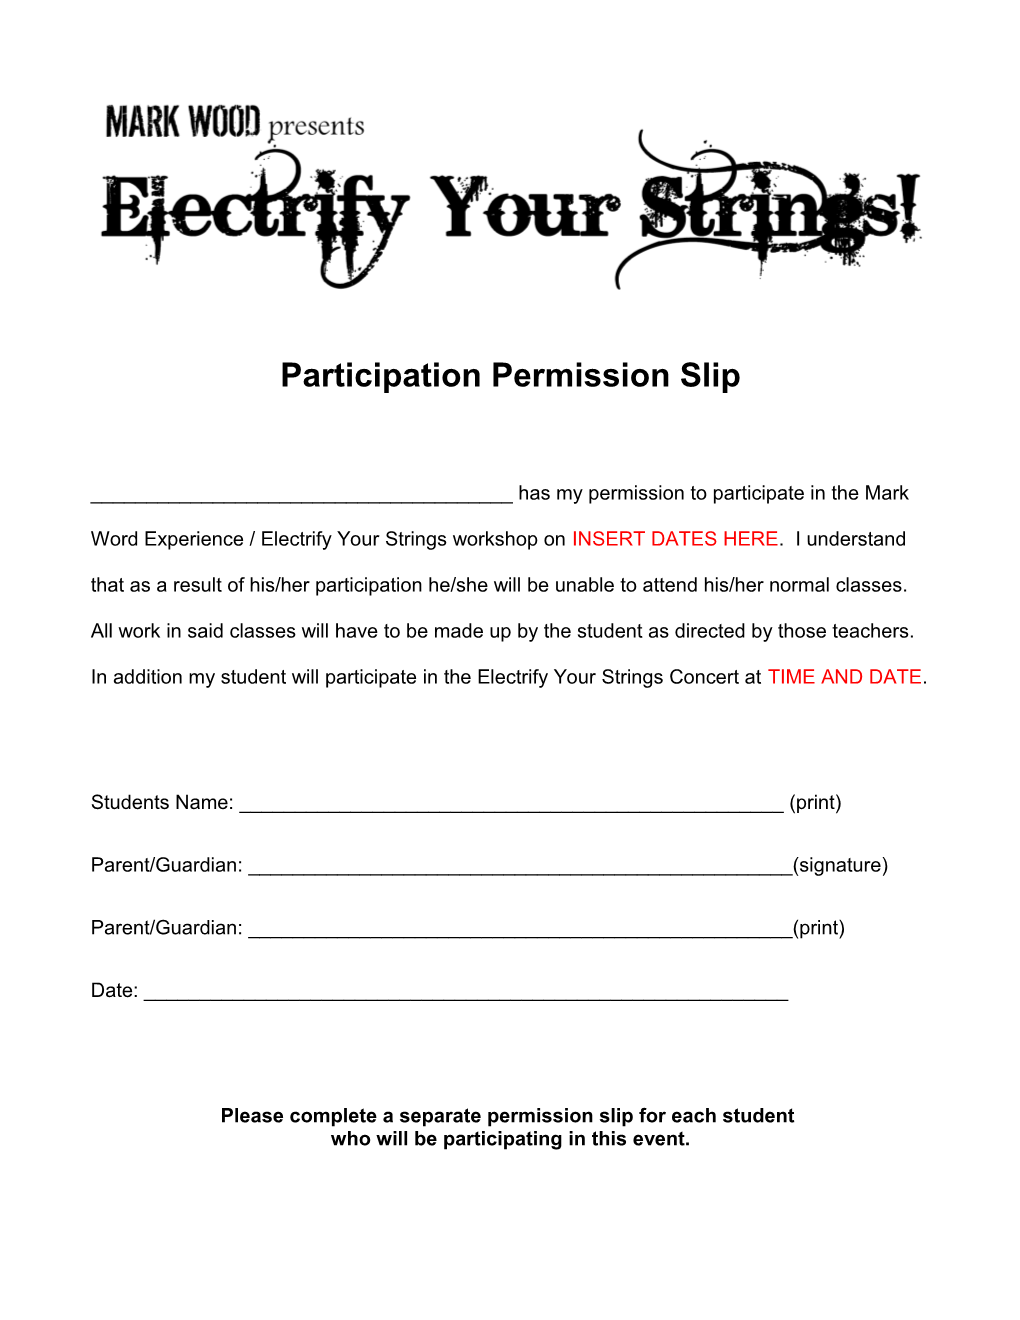 Participation Permission Slip